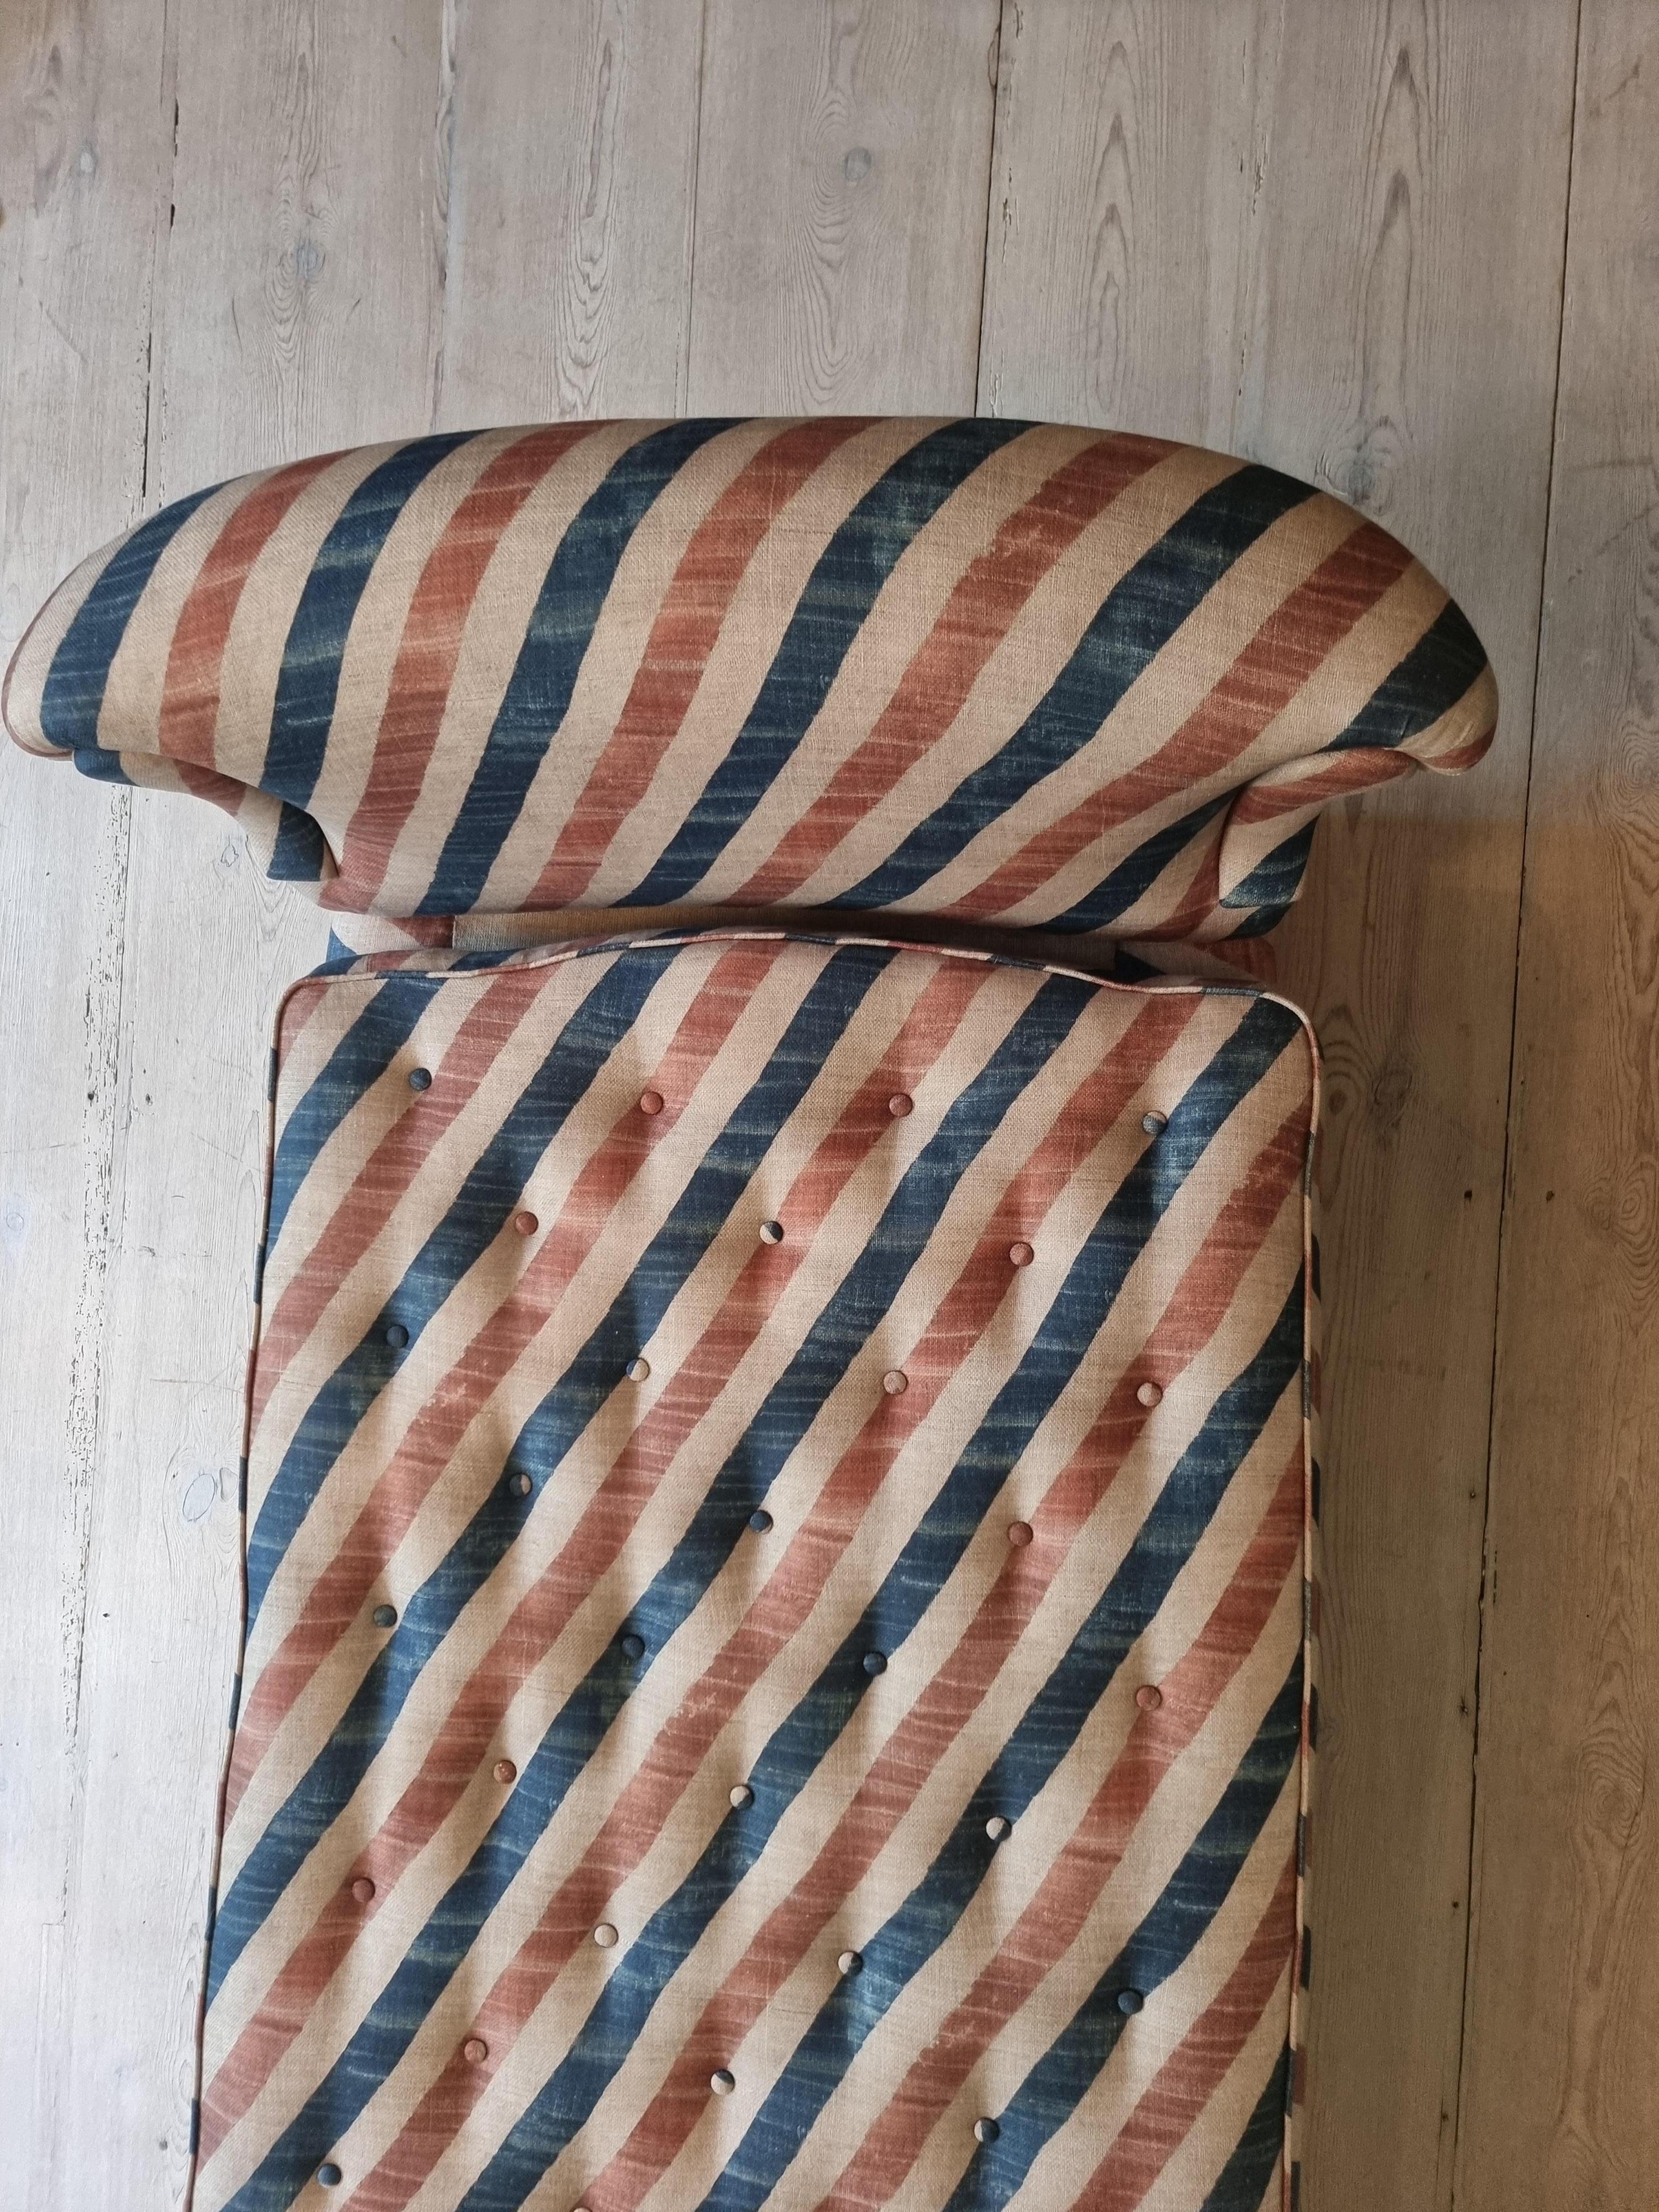 Vintage Josef Frank Daybed in Re-Upholstered Textile, Sweden 2